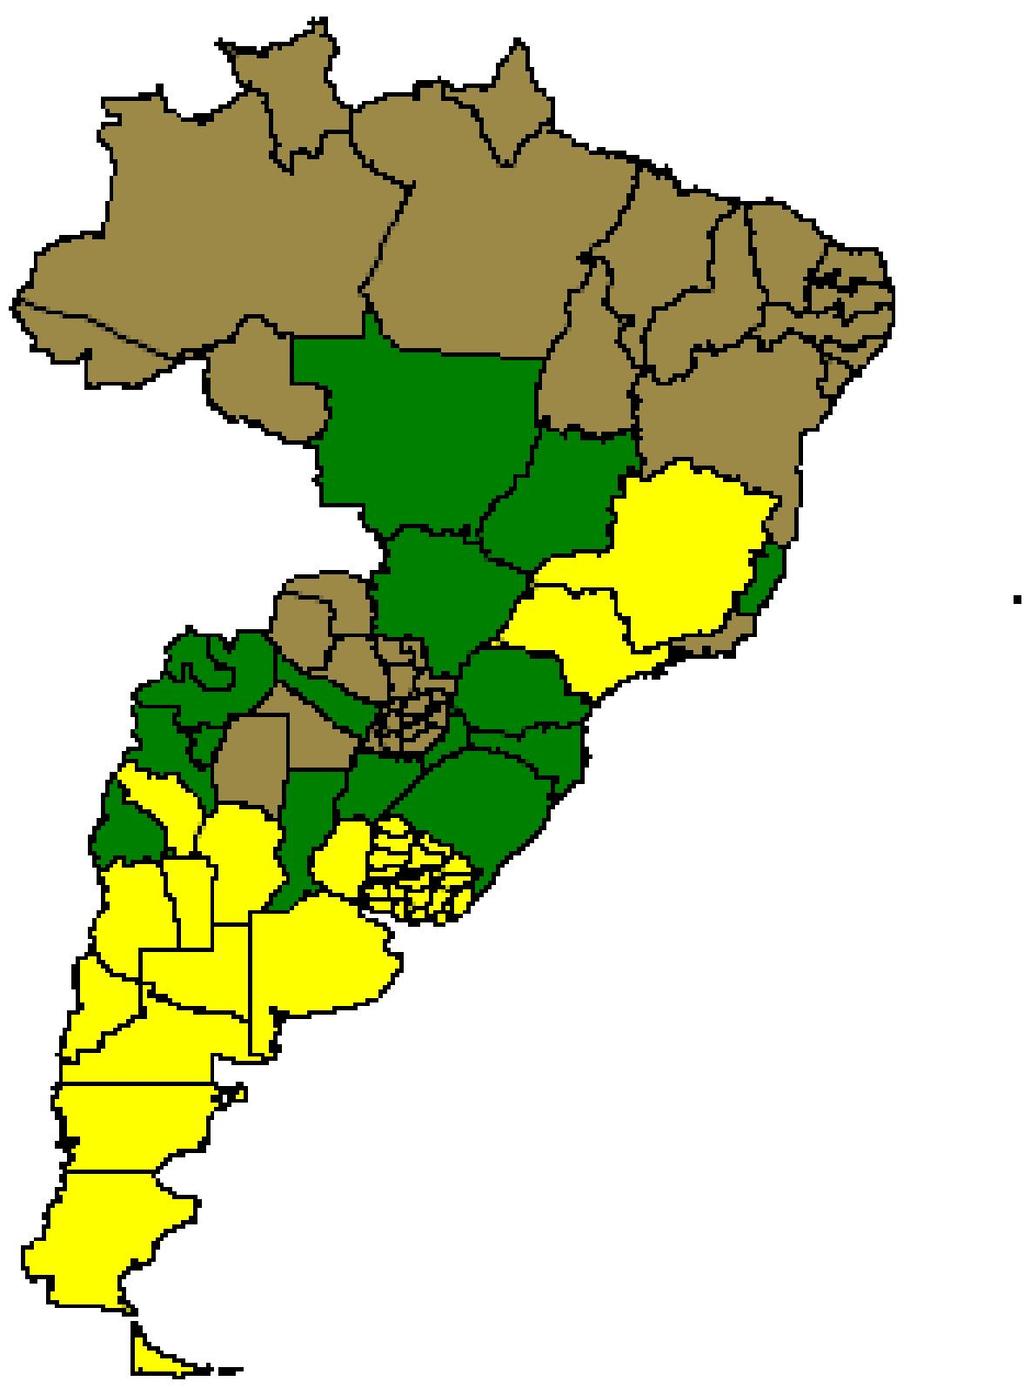 Valor del índice de pobreza por regiones del MERCOSUR. Jóvenes de 15 a 29. 2006.